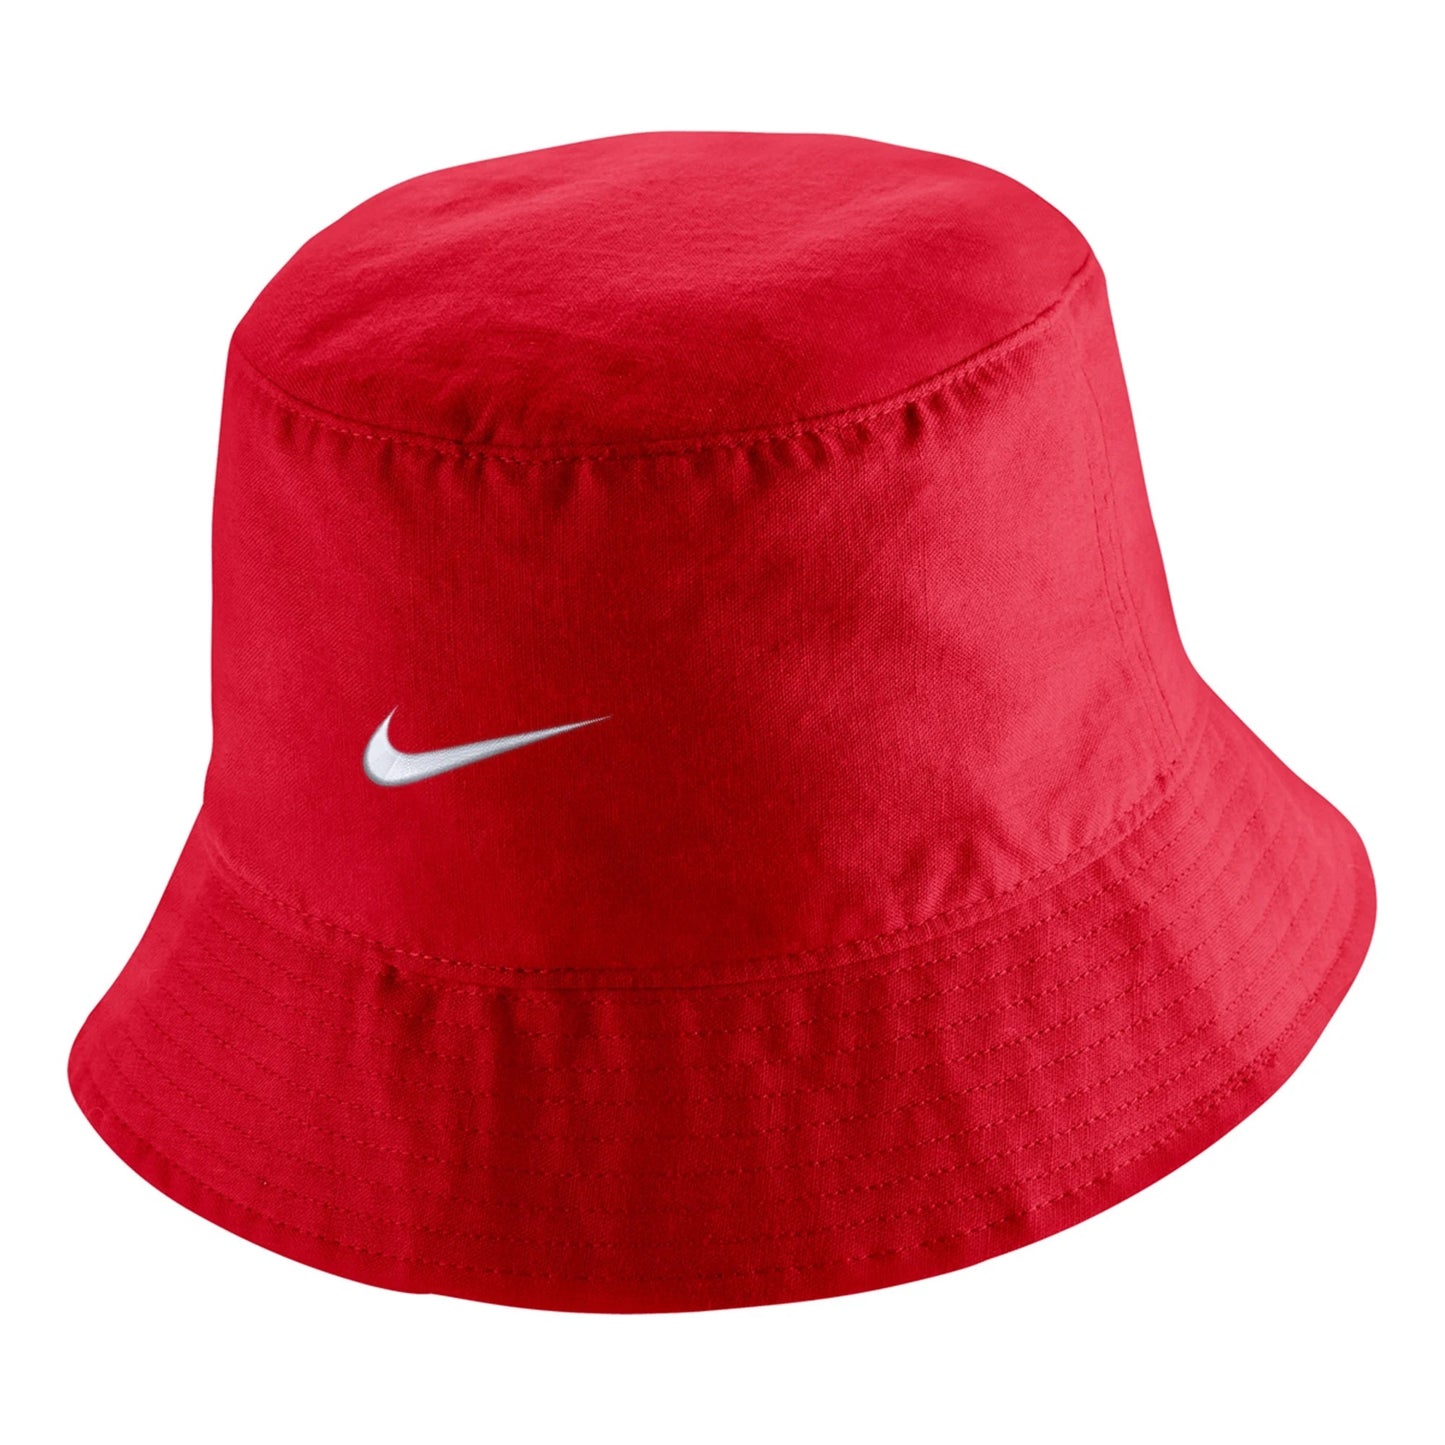 USMNT 2022/23 Core Bucket Hat